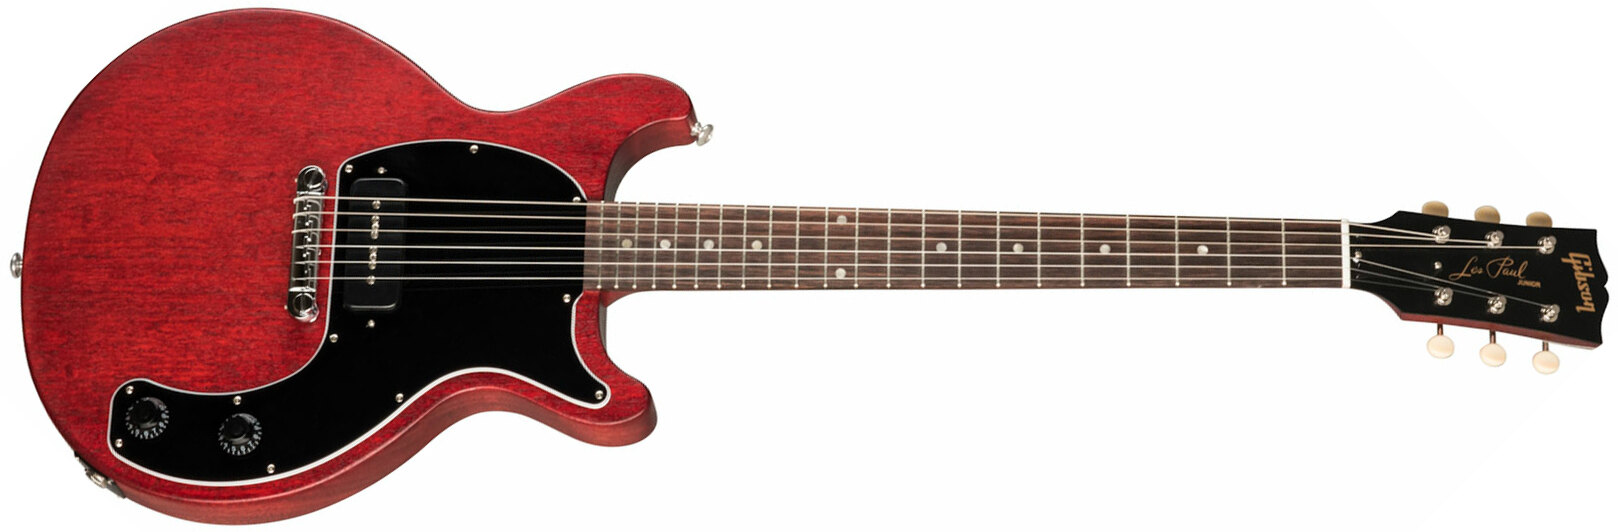 Gibson Les Paul Junior Tribute Dc Modern P90 - Worn Cherry - Guitarra eléctrica de doble corte. - Main picture